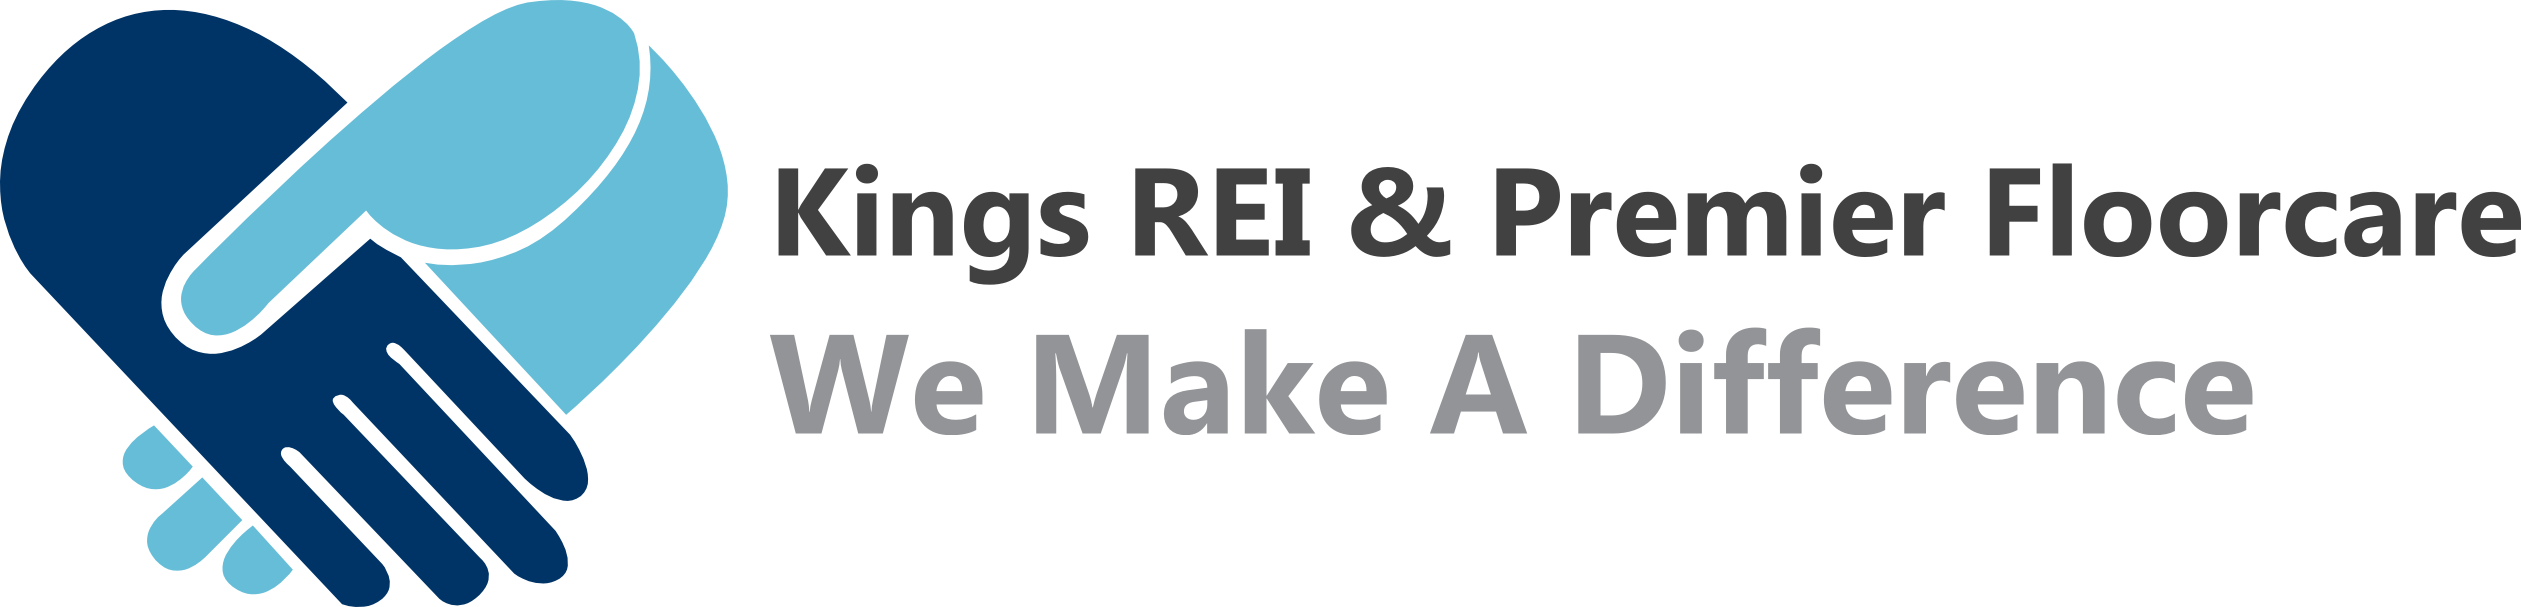 King's REI & Premier Floorcare Logo